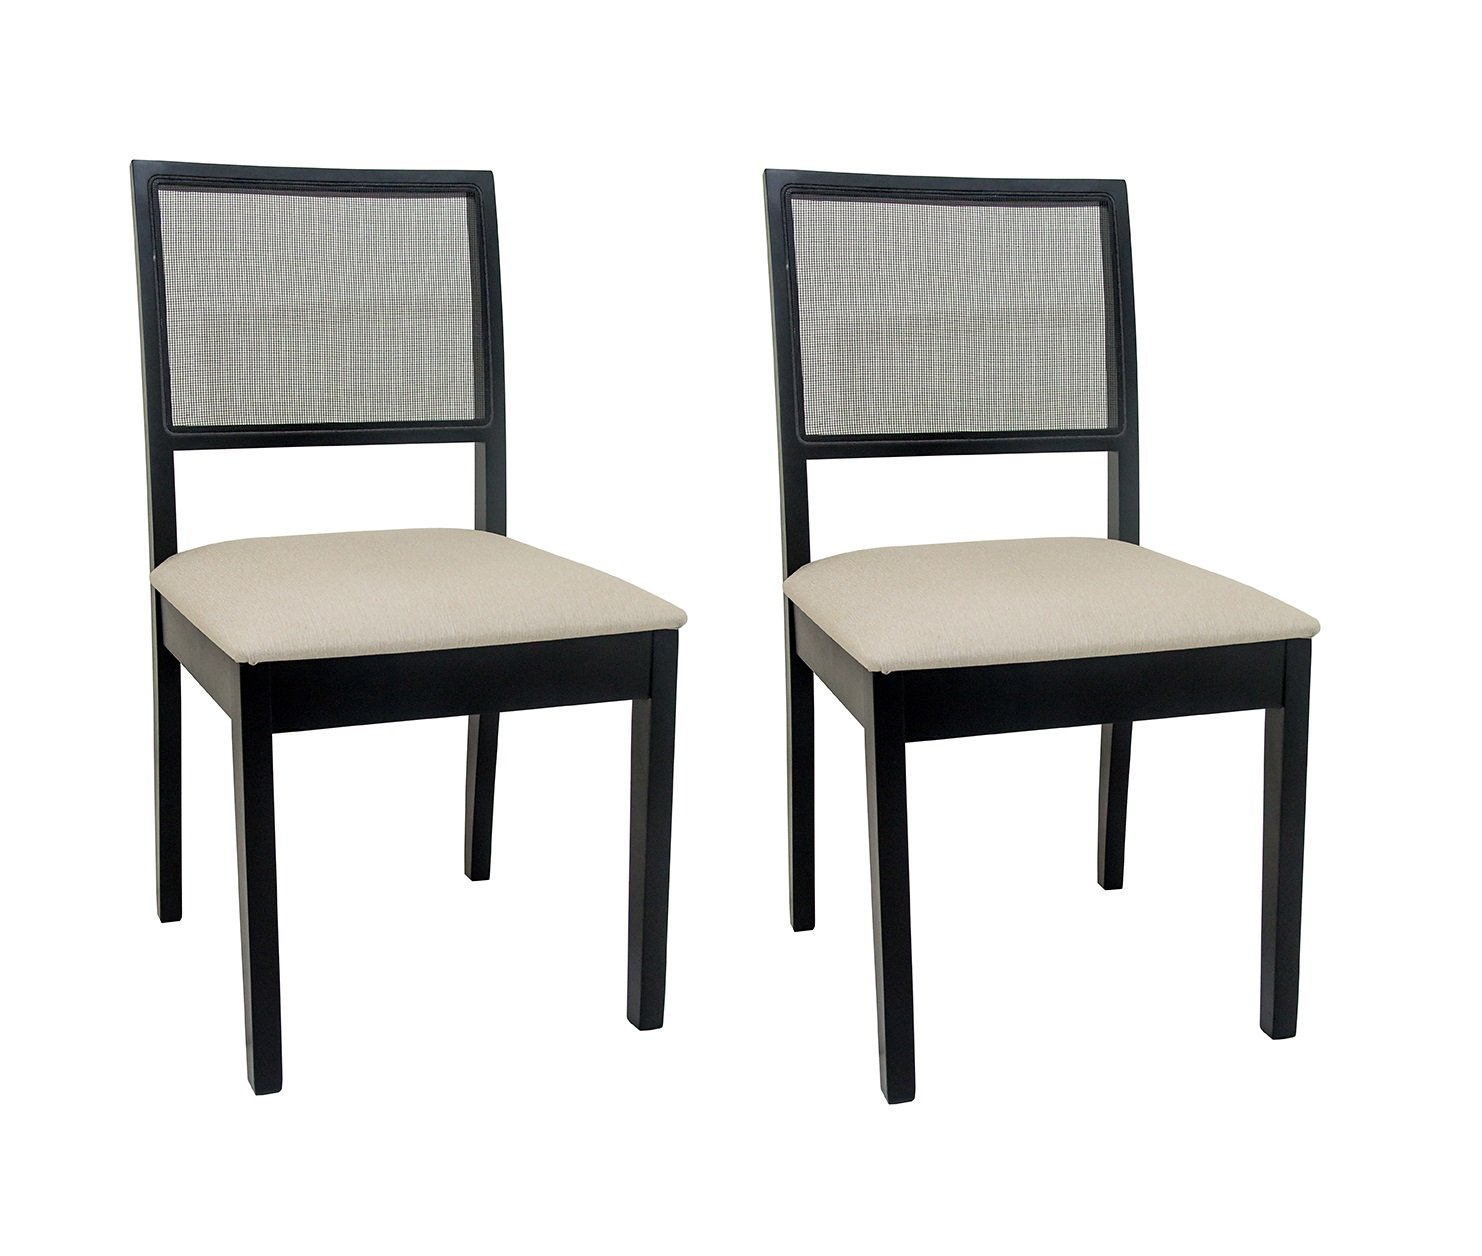 Jogo 02 cadeiras para sala de jantar Florença ebanizado encosto telinha sintética Ferrugine Design